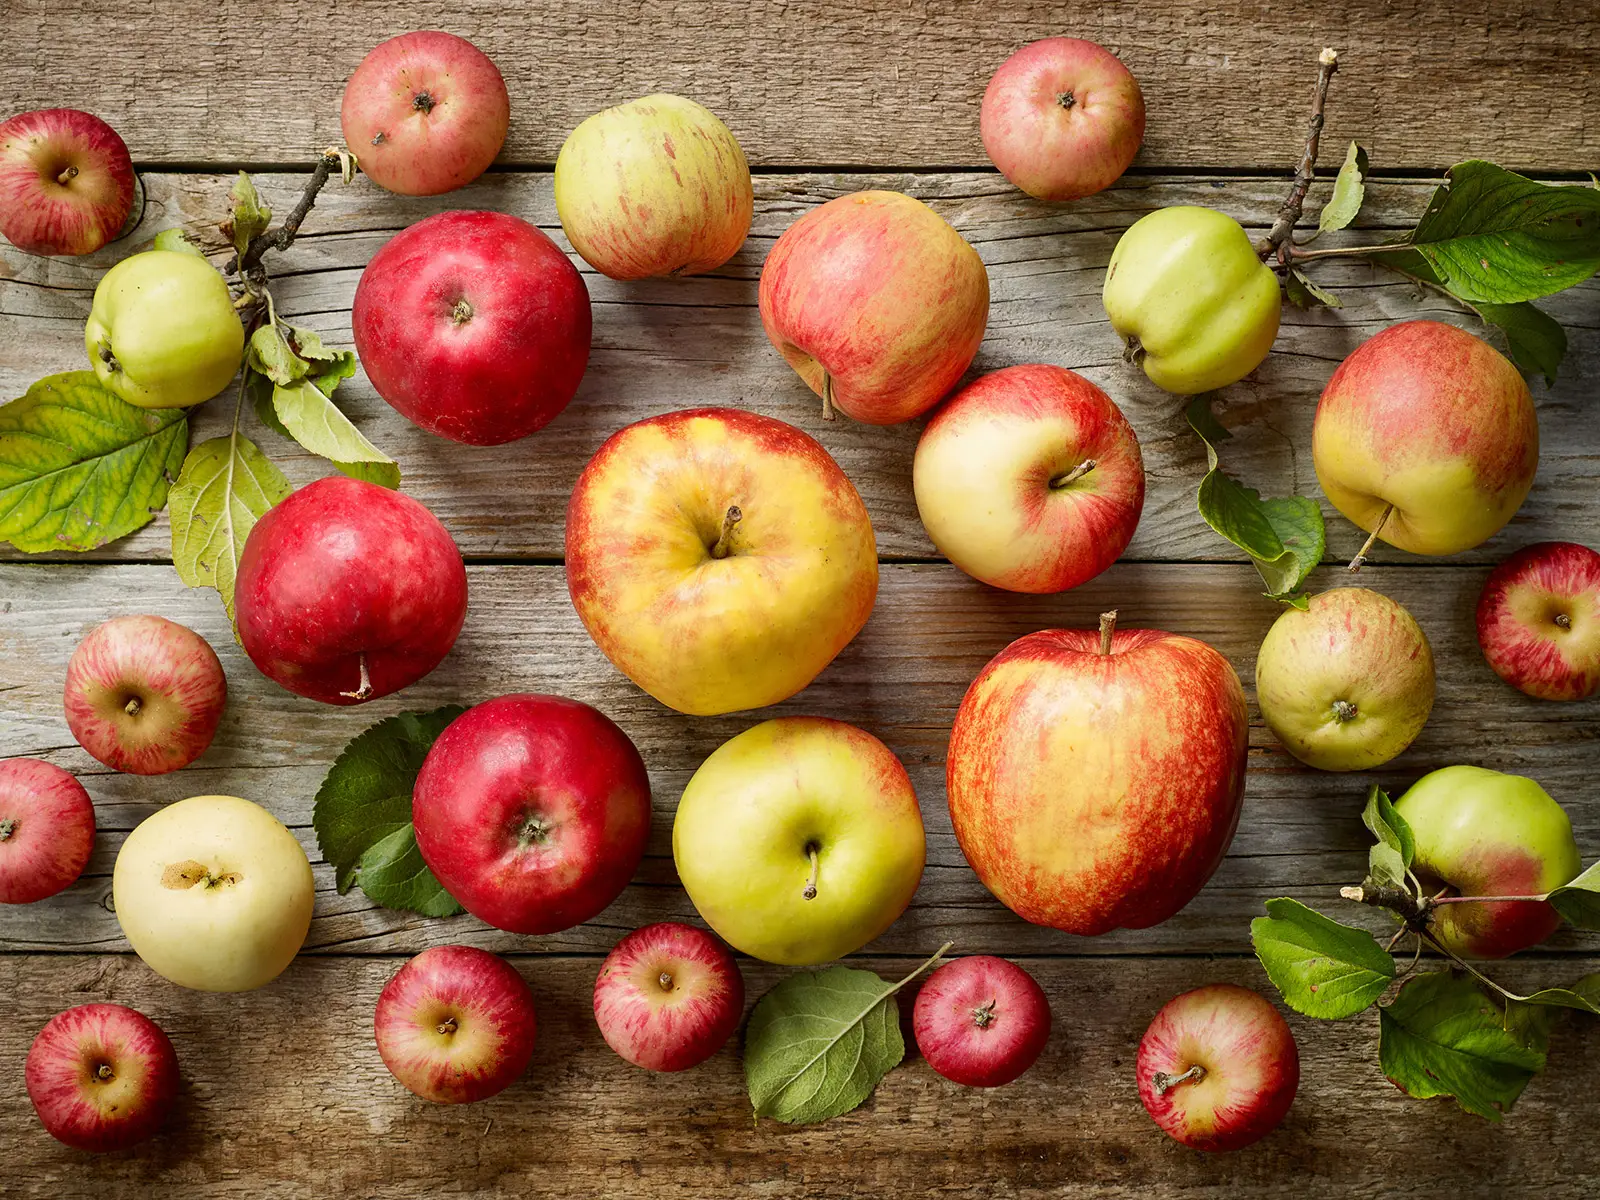 La mela giusta per il piatto giusto, 5 varietà a confronto